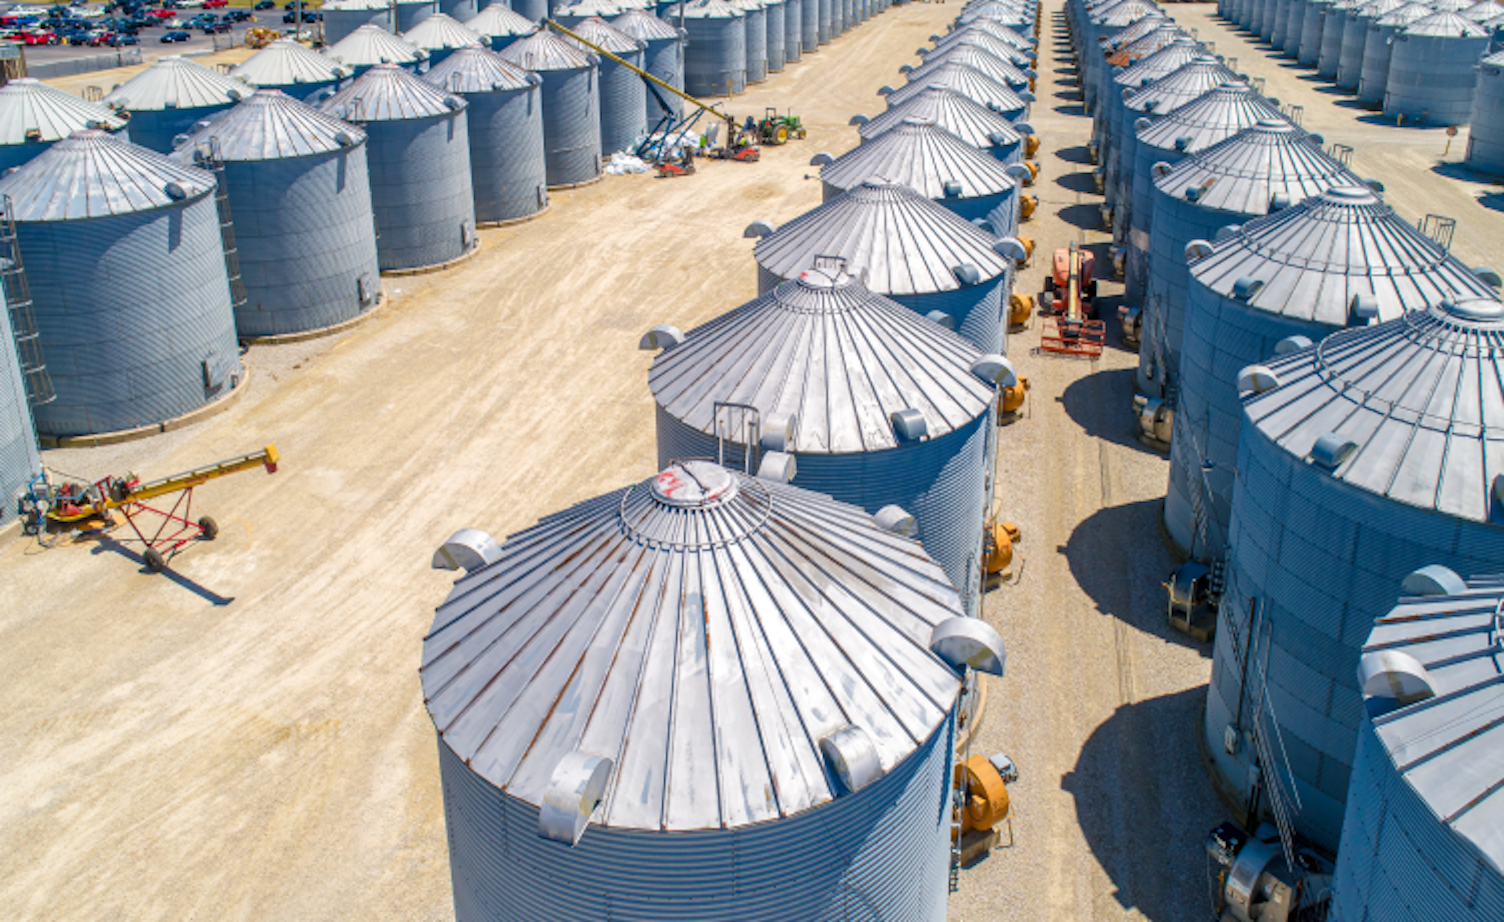 Top View of Massive Grain Storage Facility